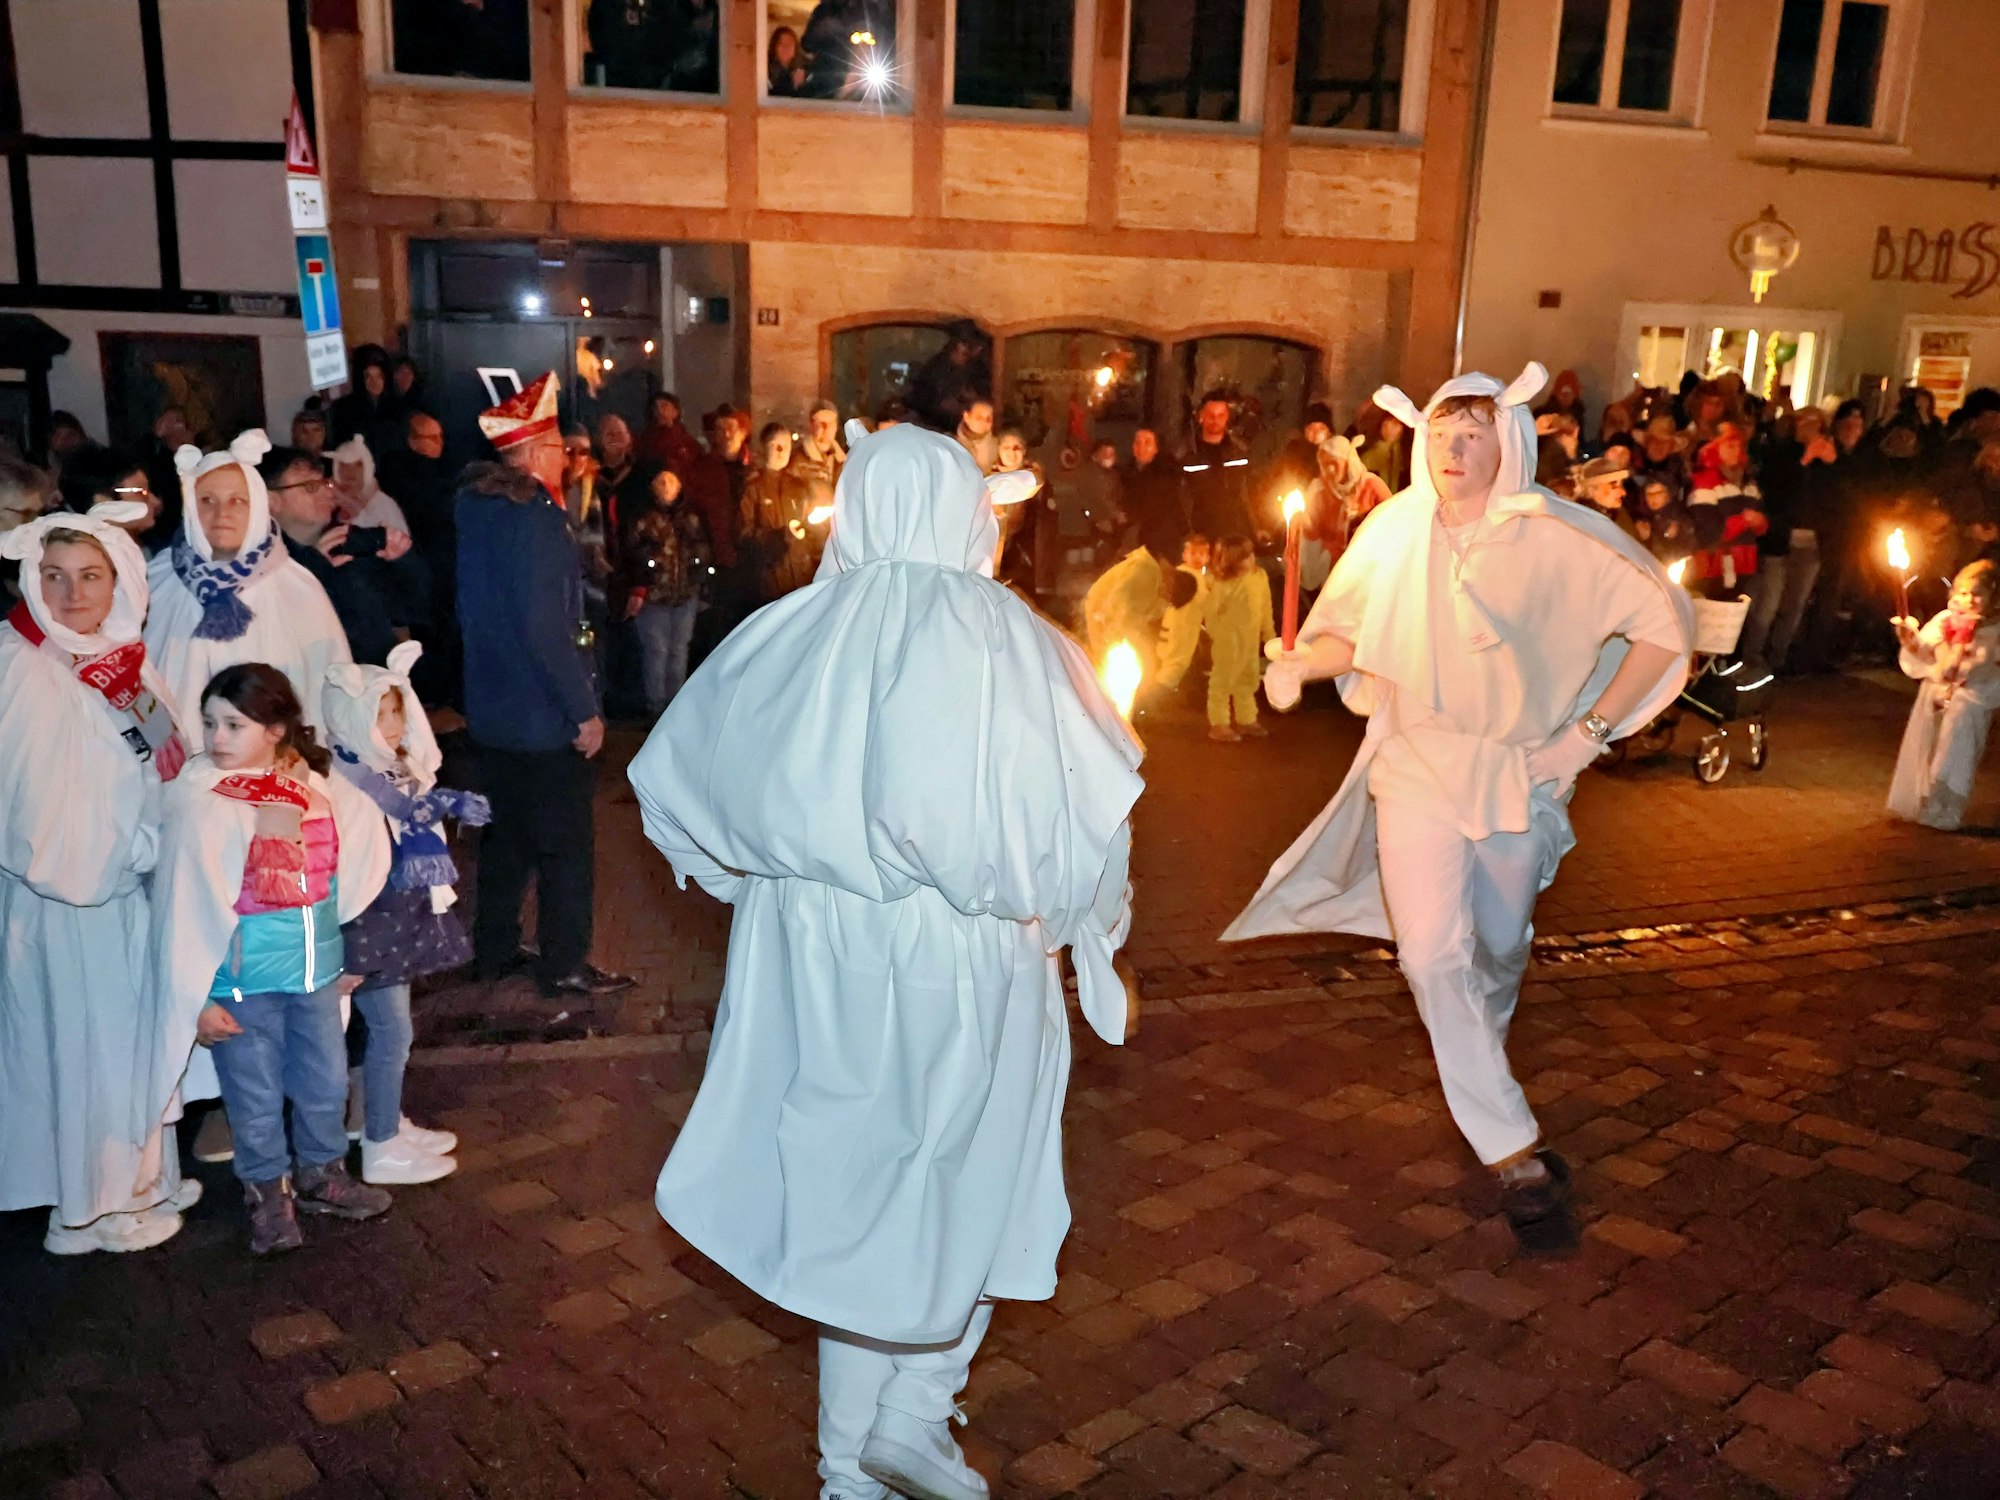 Die Jecken Böhnchen sind Traditionsfiguren im Blankenheimer Karneval. Dem Geisterzug springen sie voran und tanzen. Einige Zuschauer beobachten die beiden als Geister verkleideten jungen Männer.